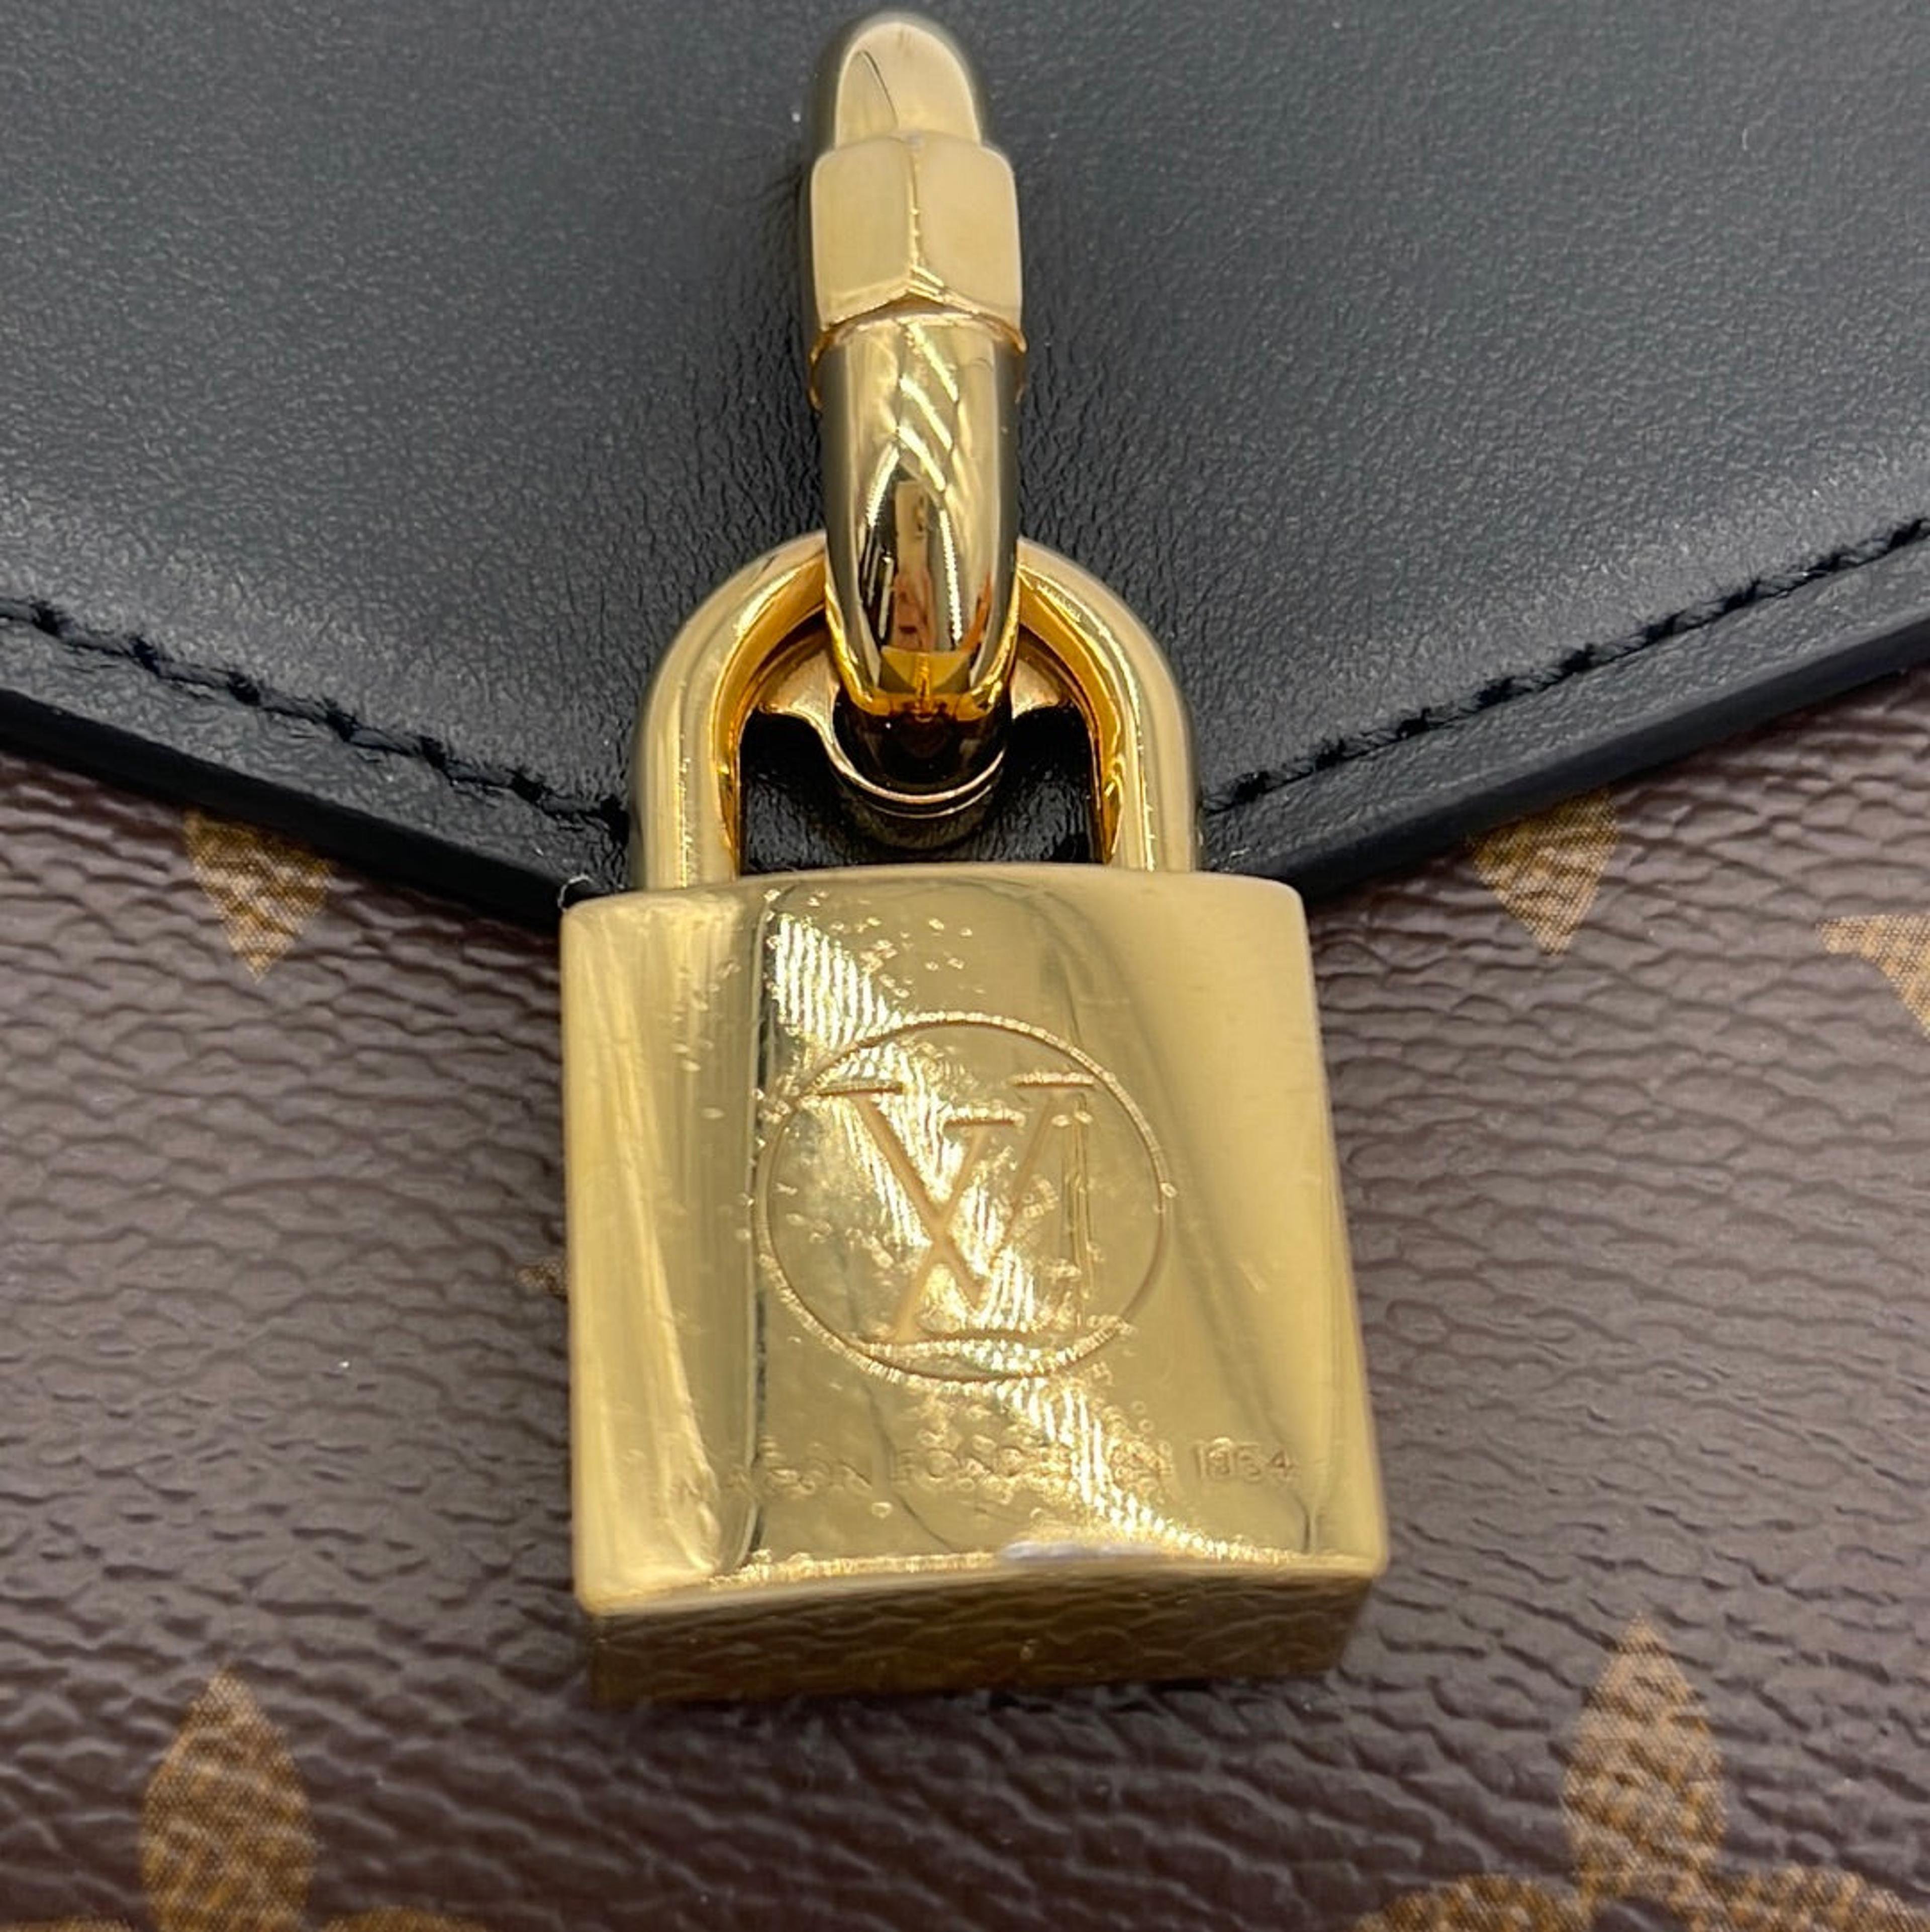 Preloved Louis Vuitton Padlock On Strap Bag 7DH48K6 100323